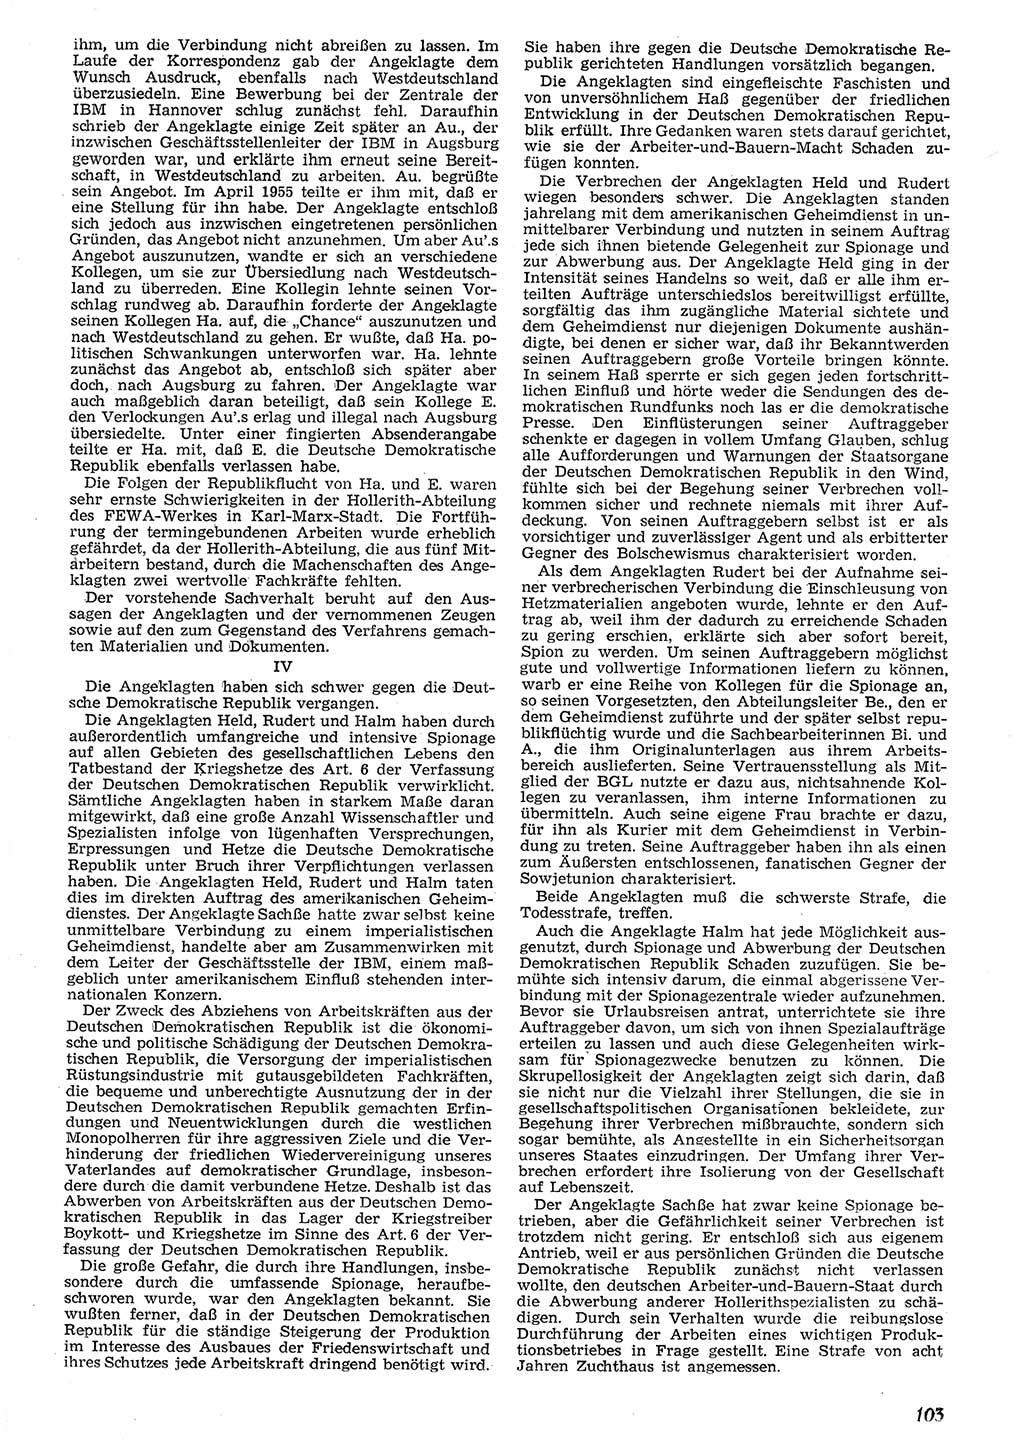 Neue Justiz (NJ), Zeitschrift für Recht und Rechtswissenschaft [Deutsche Demokratische Republik (DDR)], 10. Jahrgang 1956, Seite 103 (NJ DDR 1956, S. 103)